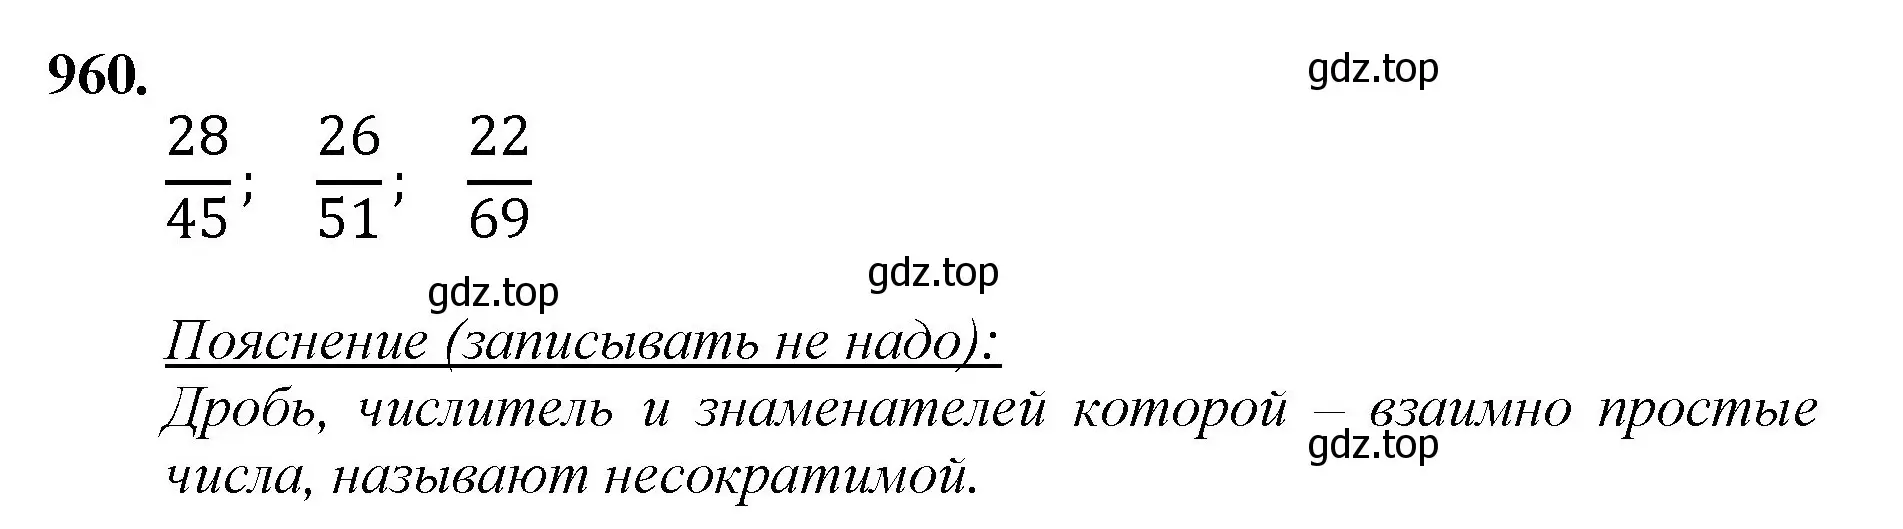 Решение номер 960 (страница 221) гдз по математике 5 класс Мерзляк, Полонский, учебник